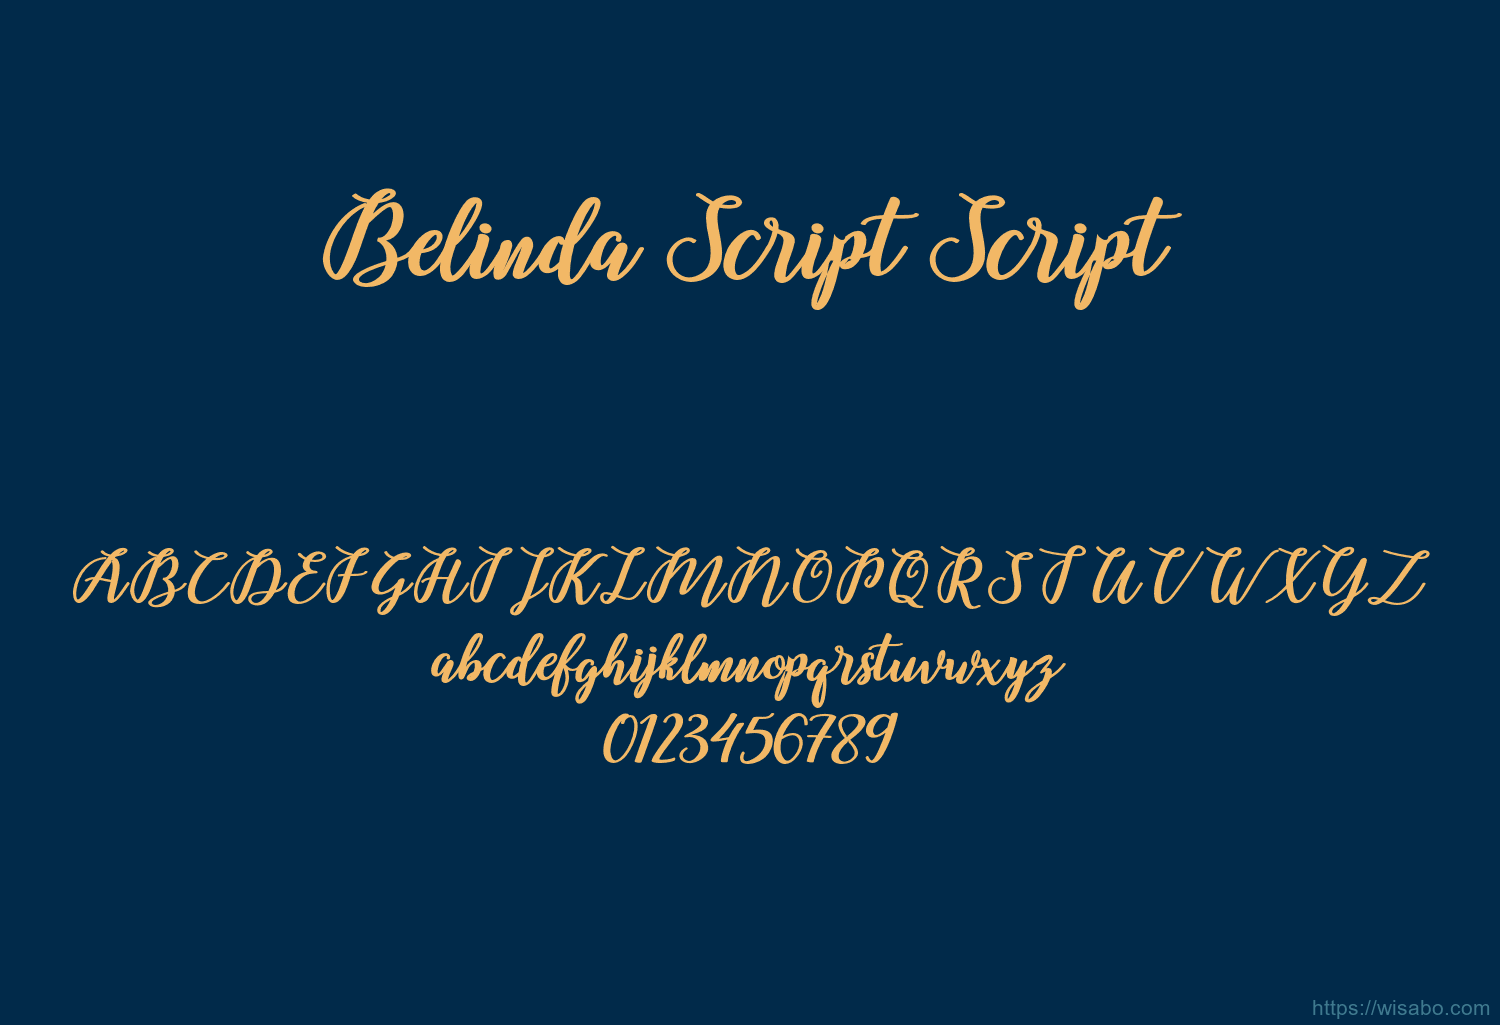 Belinda Script Script